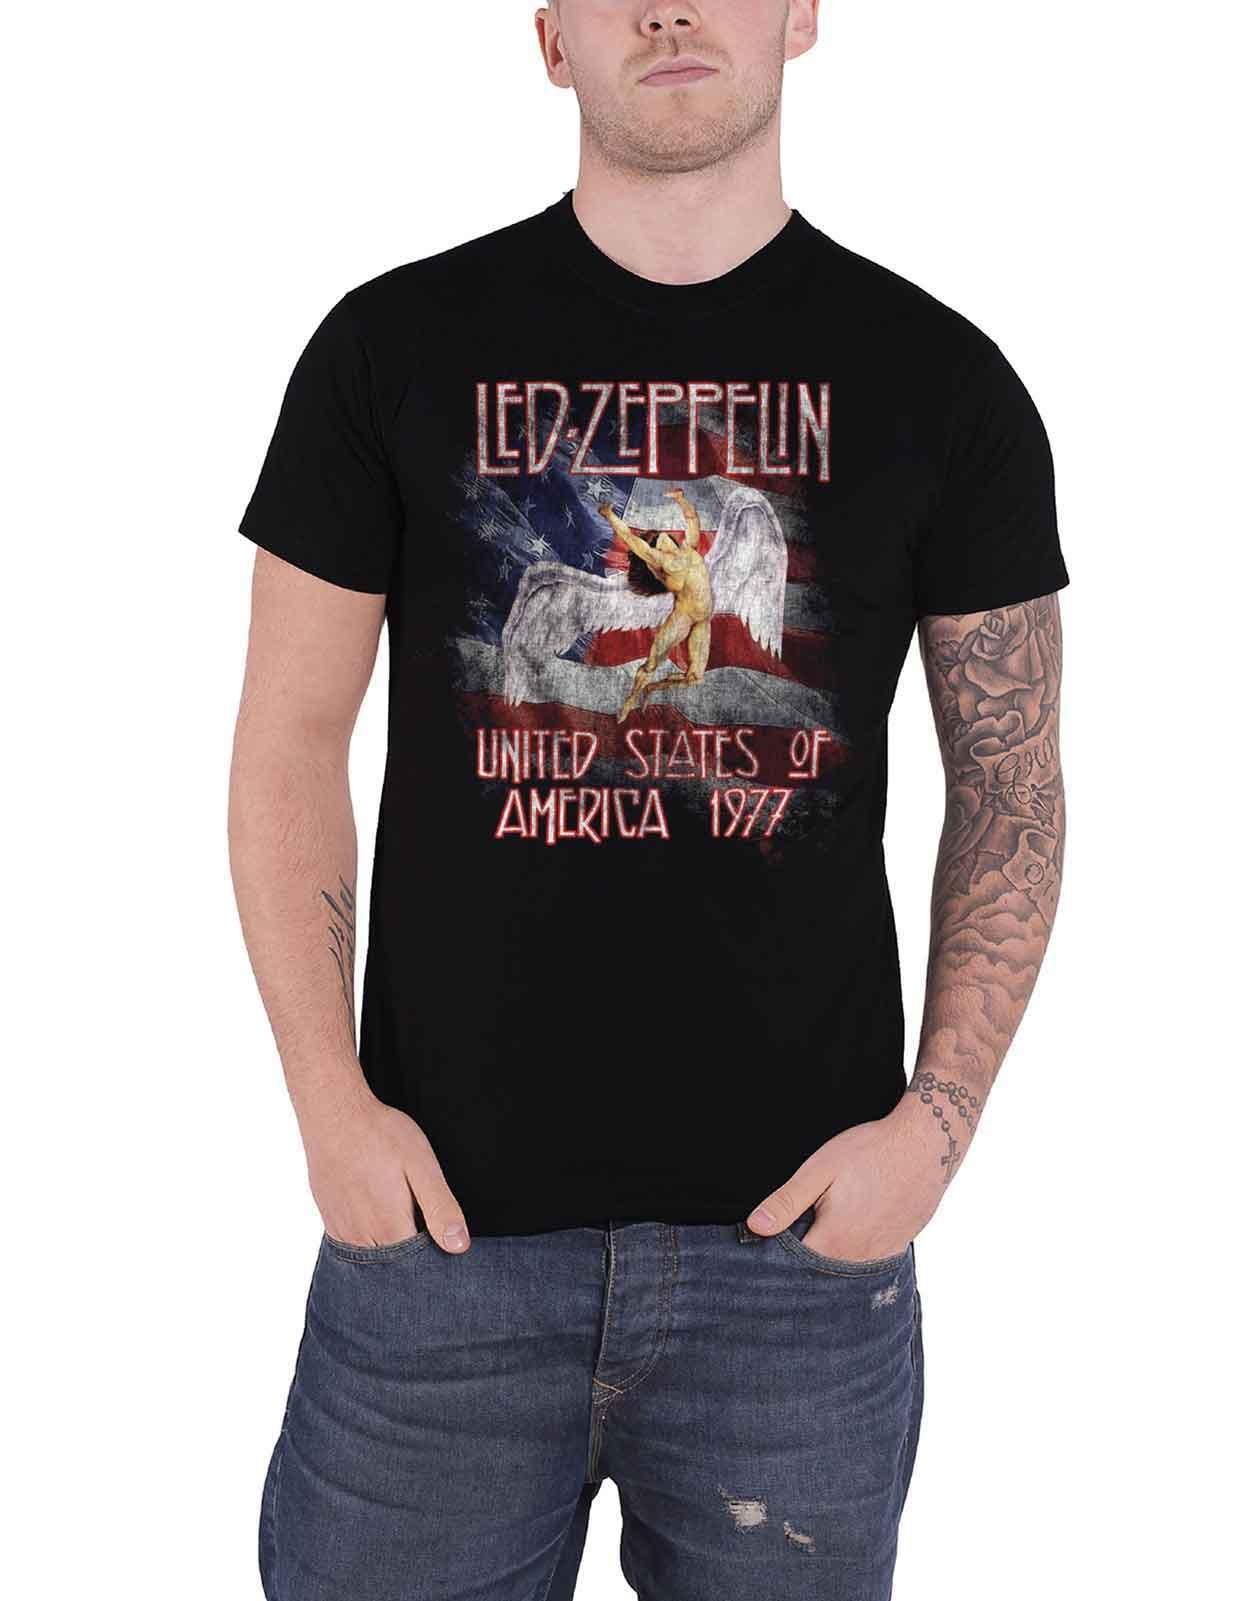 Футболка Stars N Stripes USA 77 Led Zeppelin, черный темно фиолетовая мужская черная футболка с графическим рисунком футболка с фанатом рок группы размер s 3xl модная футболка топ футболка